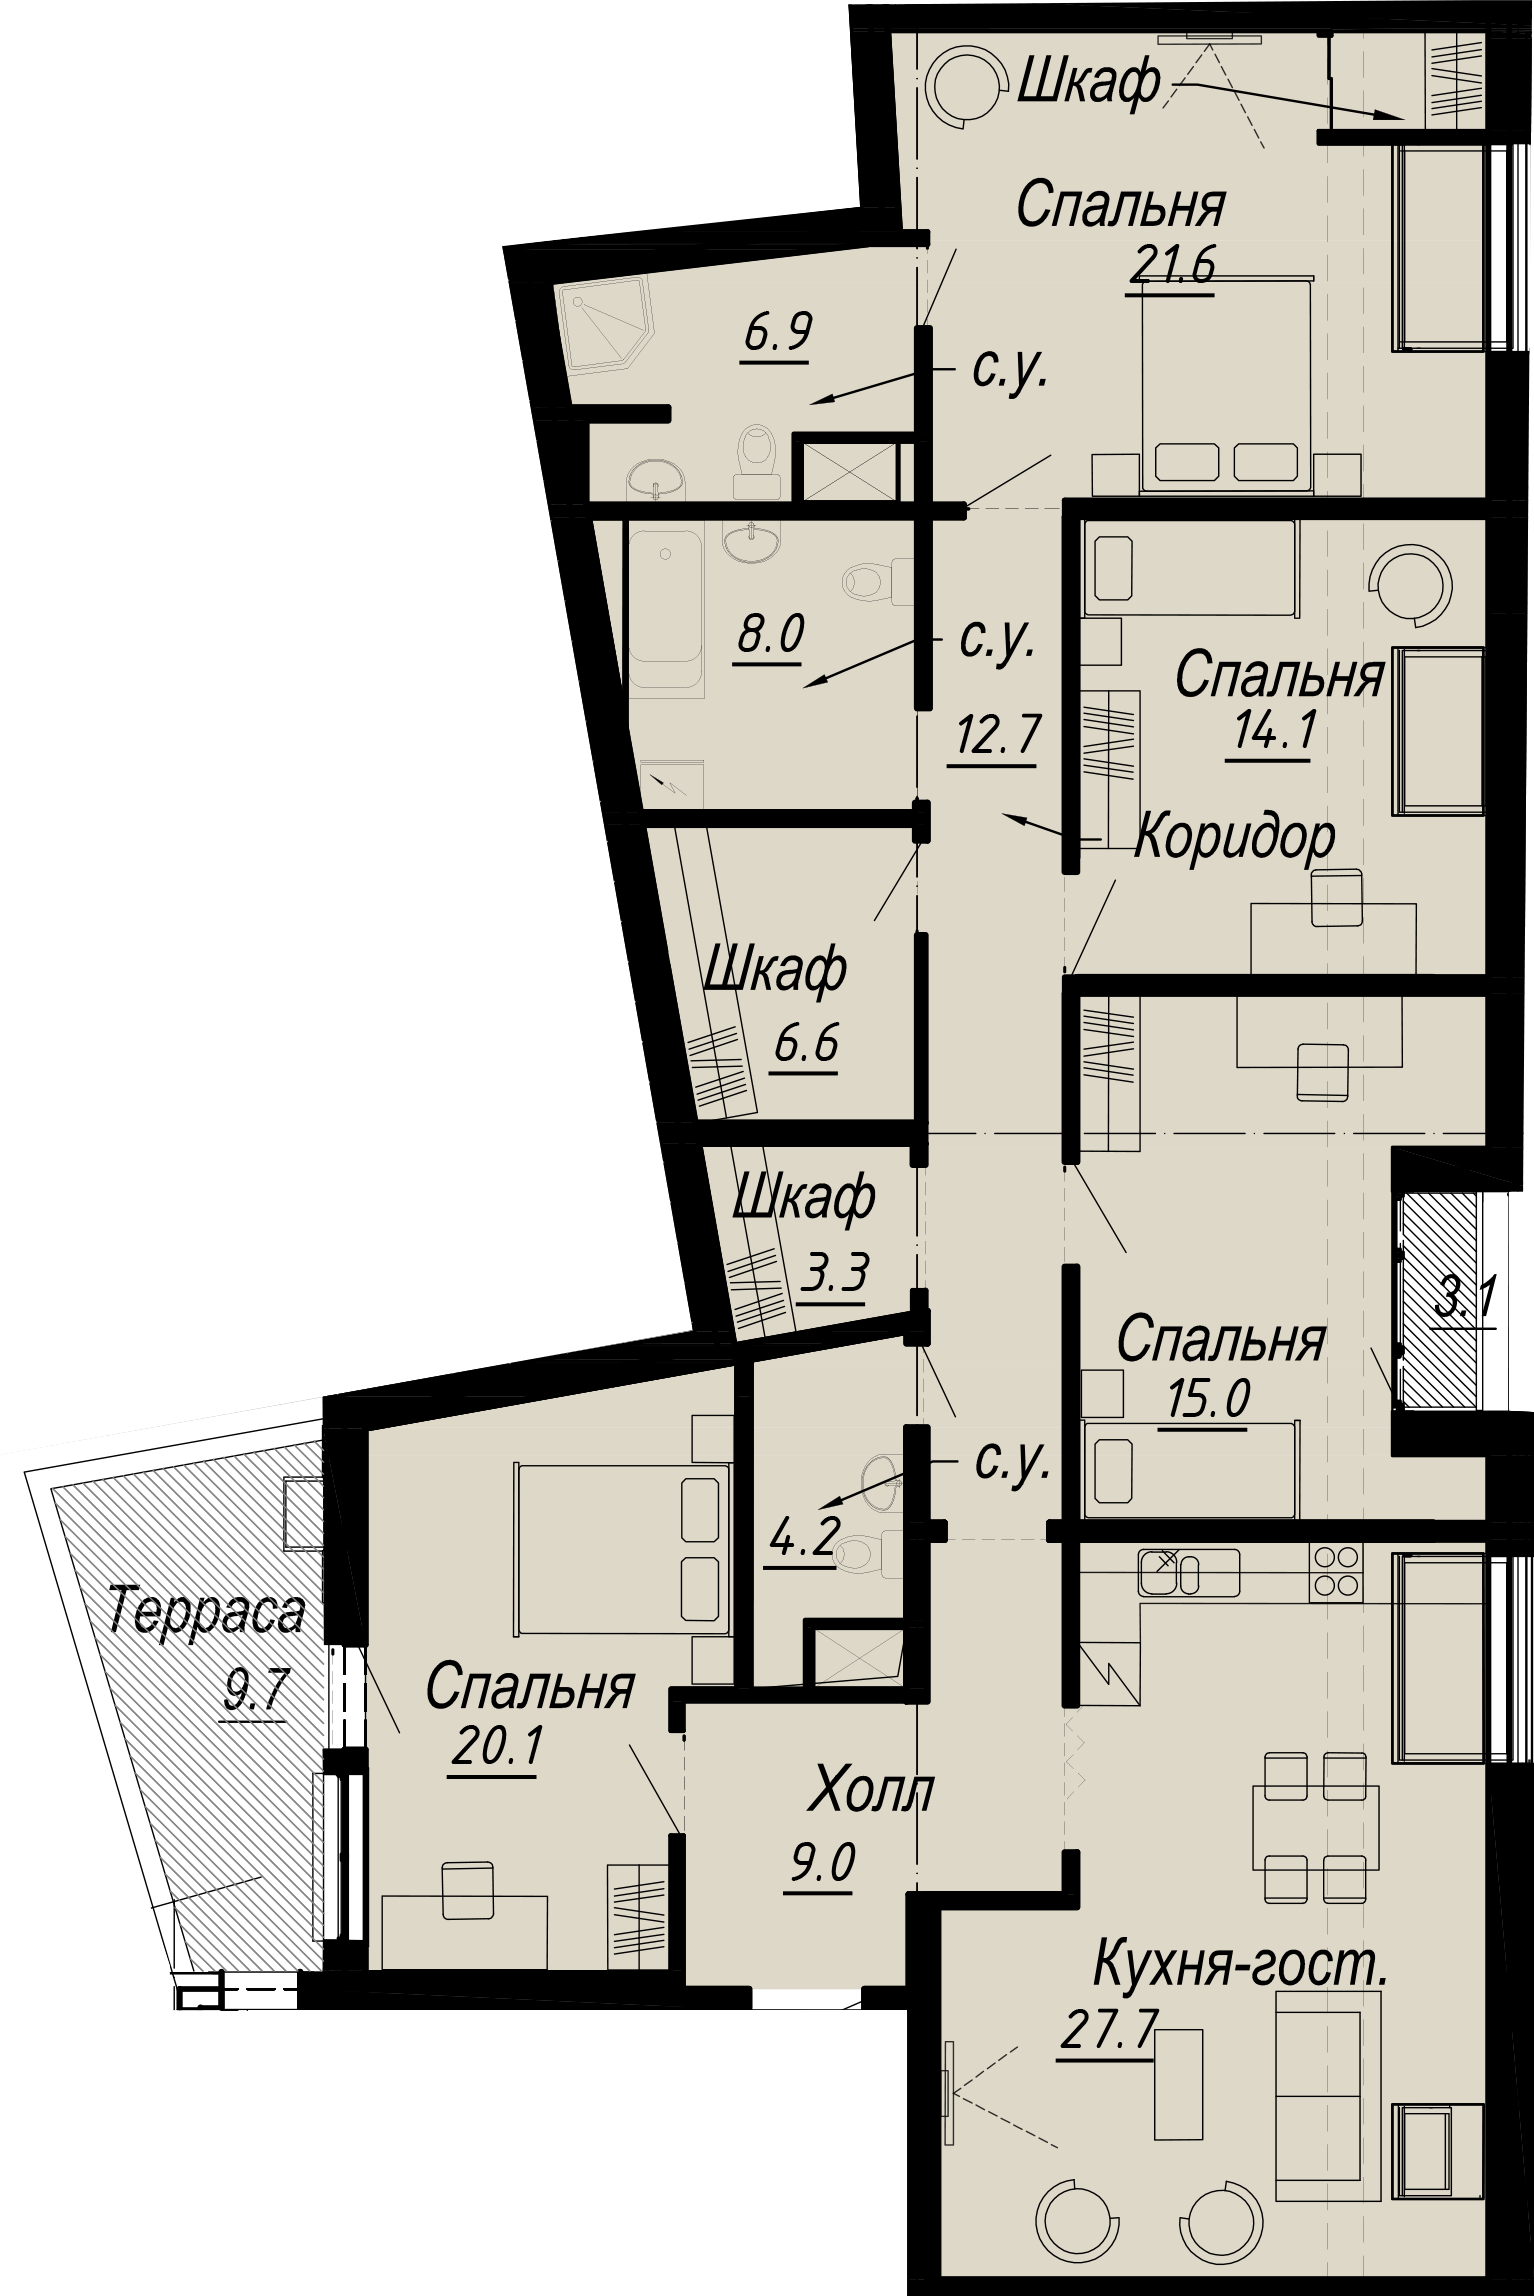 4-комнатная квартира  №7-8 в Meltzer Hall: 160.27 м², этаж 8 - купить в Санкт-Петербурге